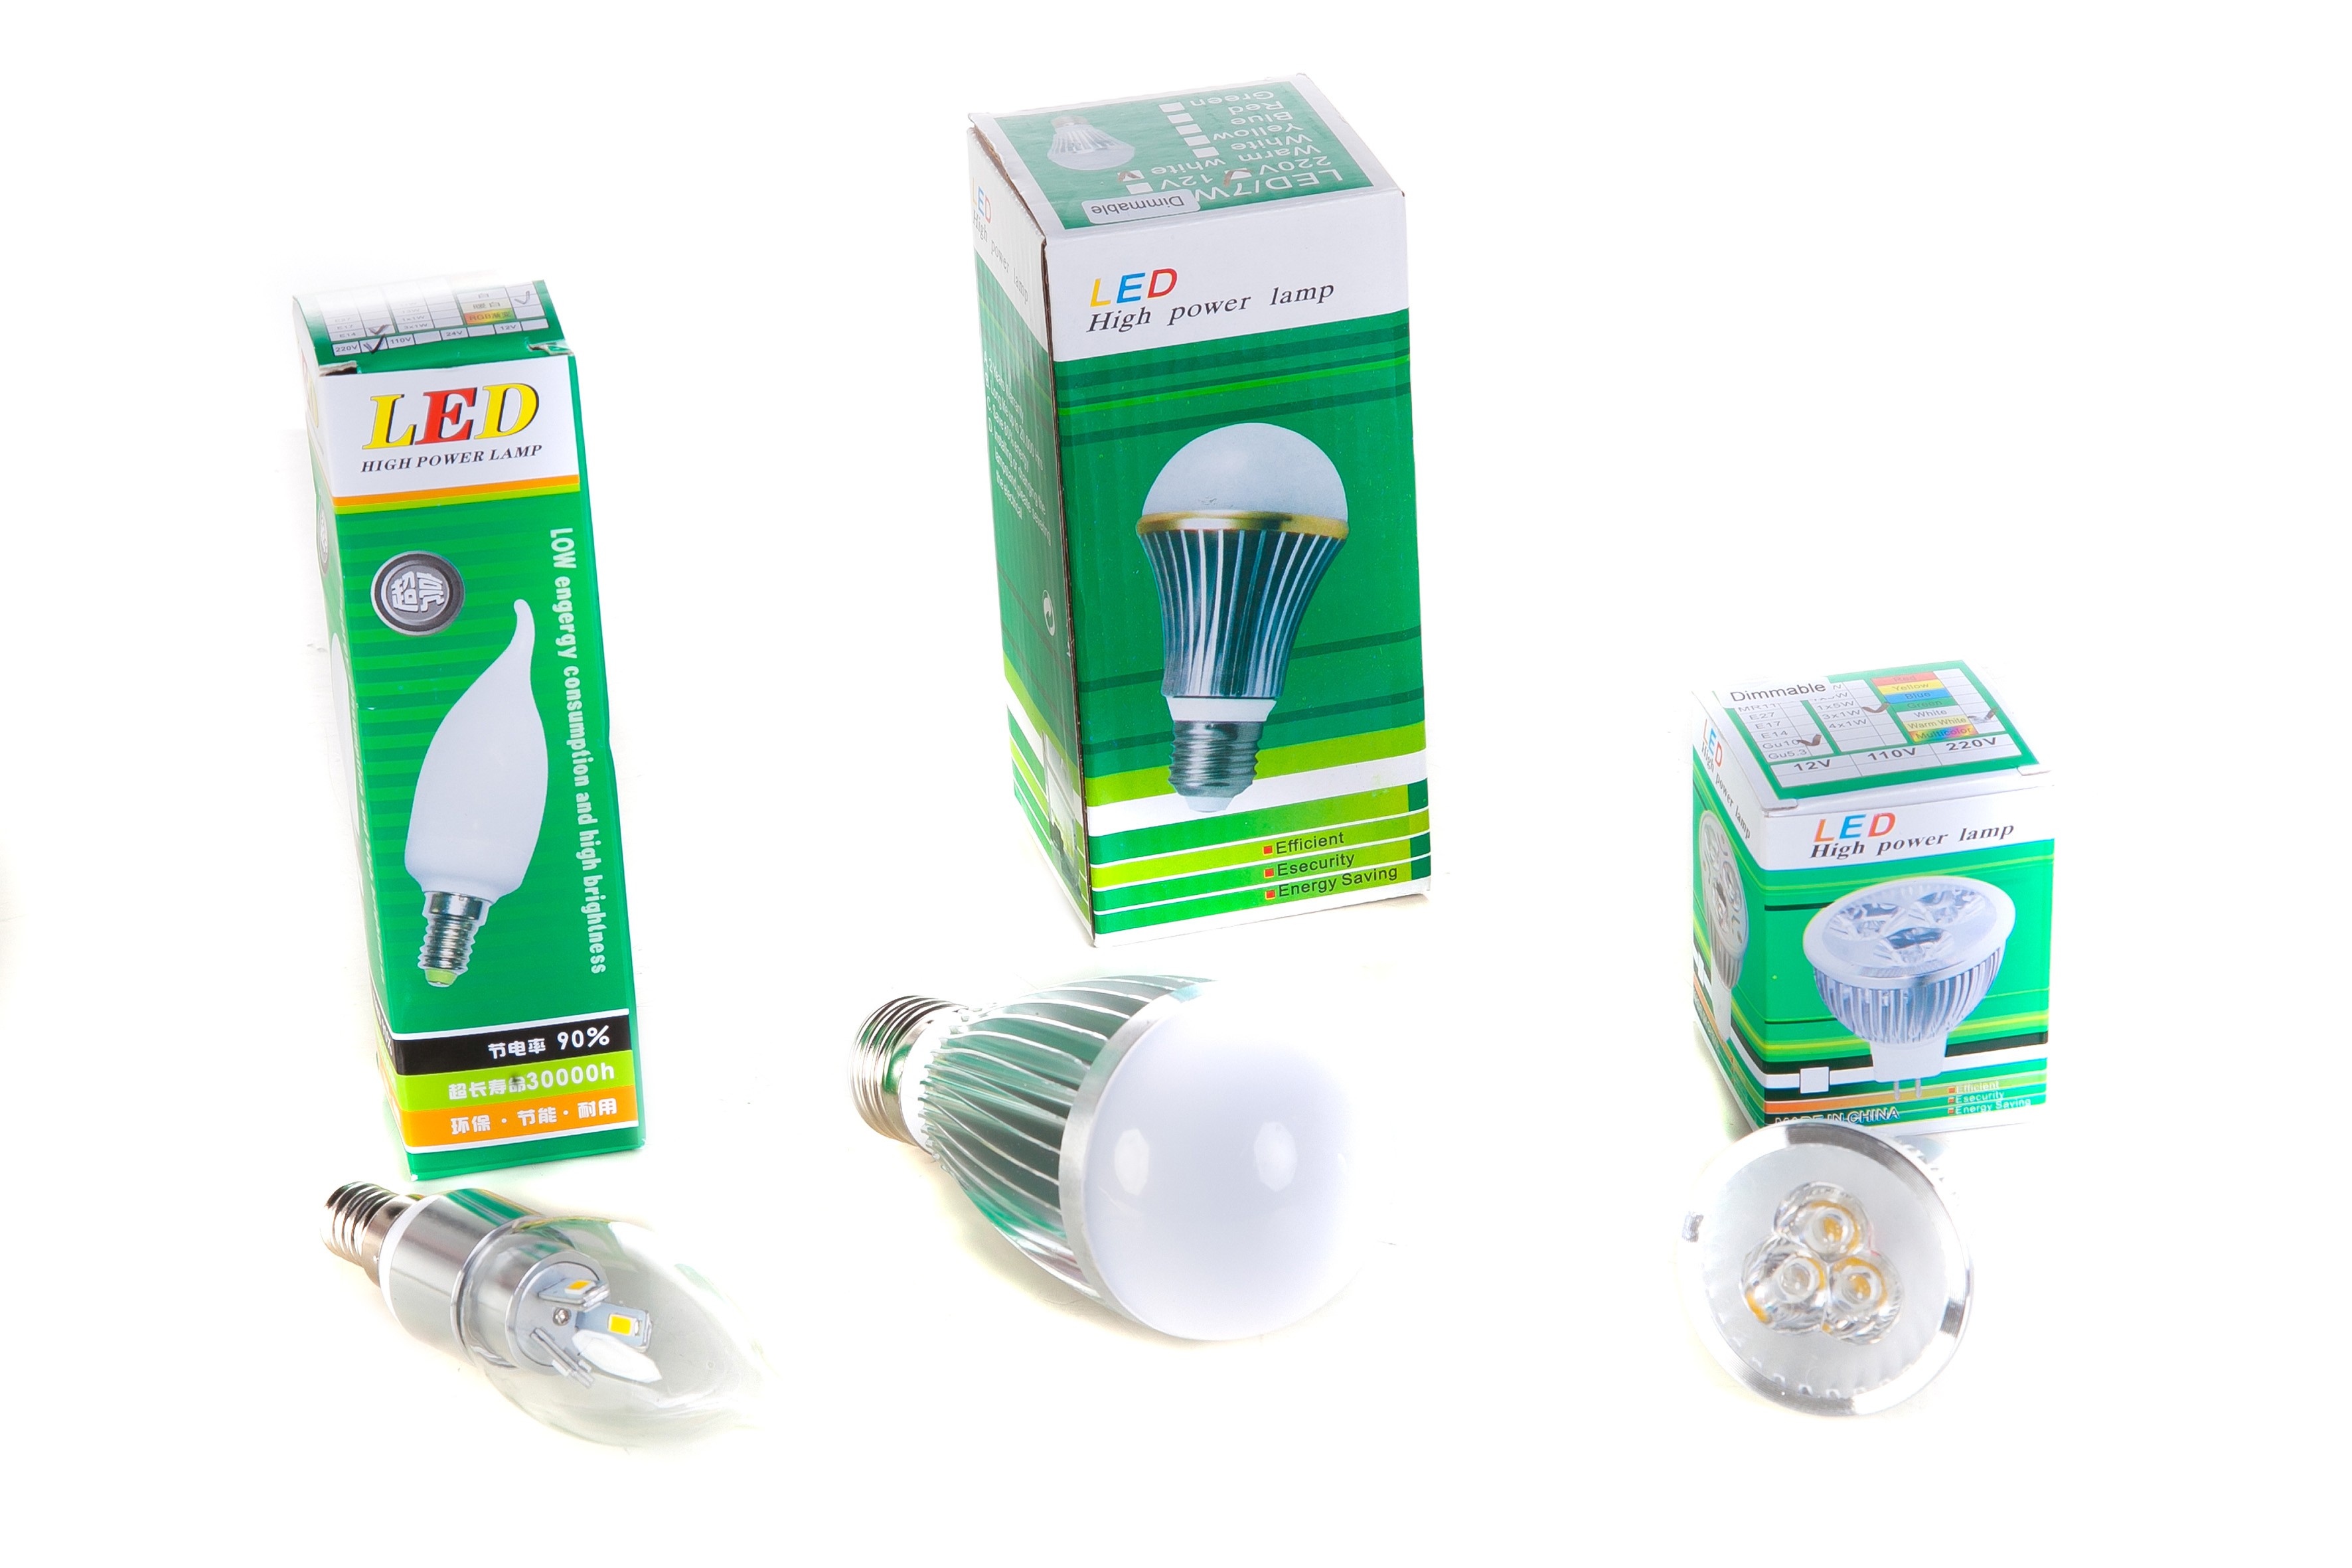 LED bespaarbox 1 - 9 stuks ledlampen